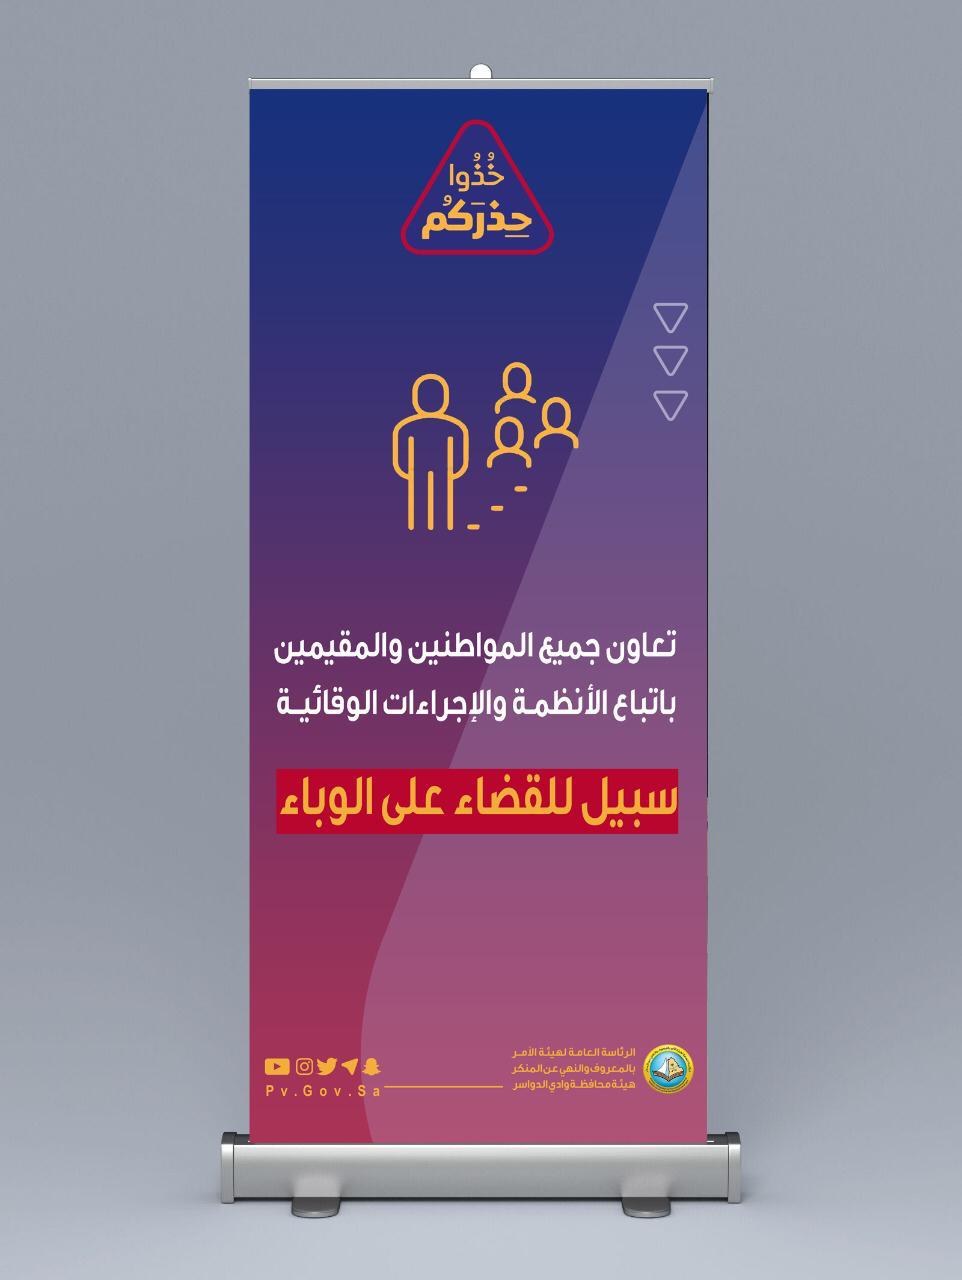 هيئة الأمر بالمعروف بمحافظة وادي الدواسر بمنطقة الرياض تفعل حملة «خذوا حذركم»